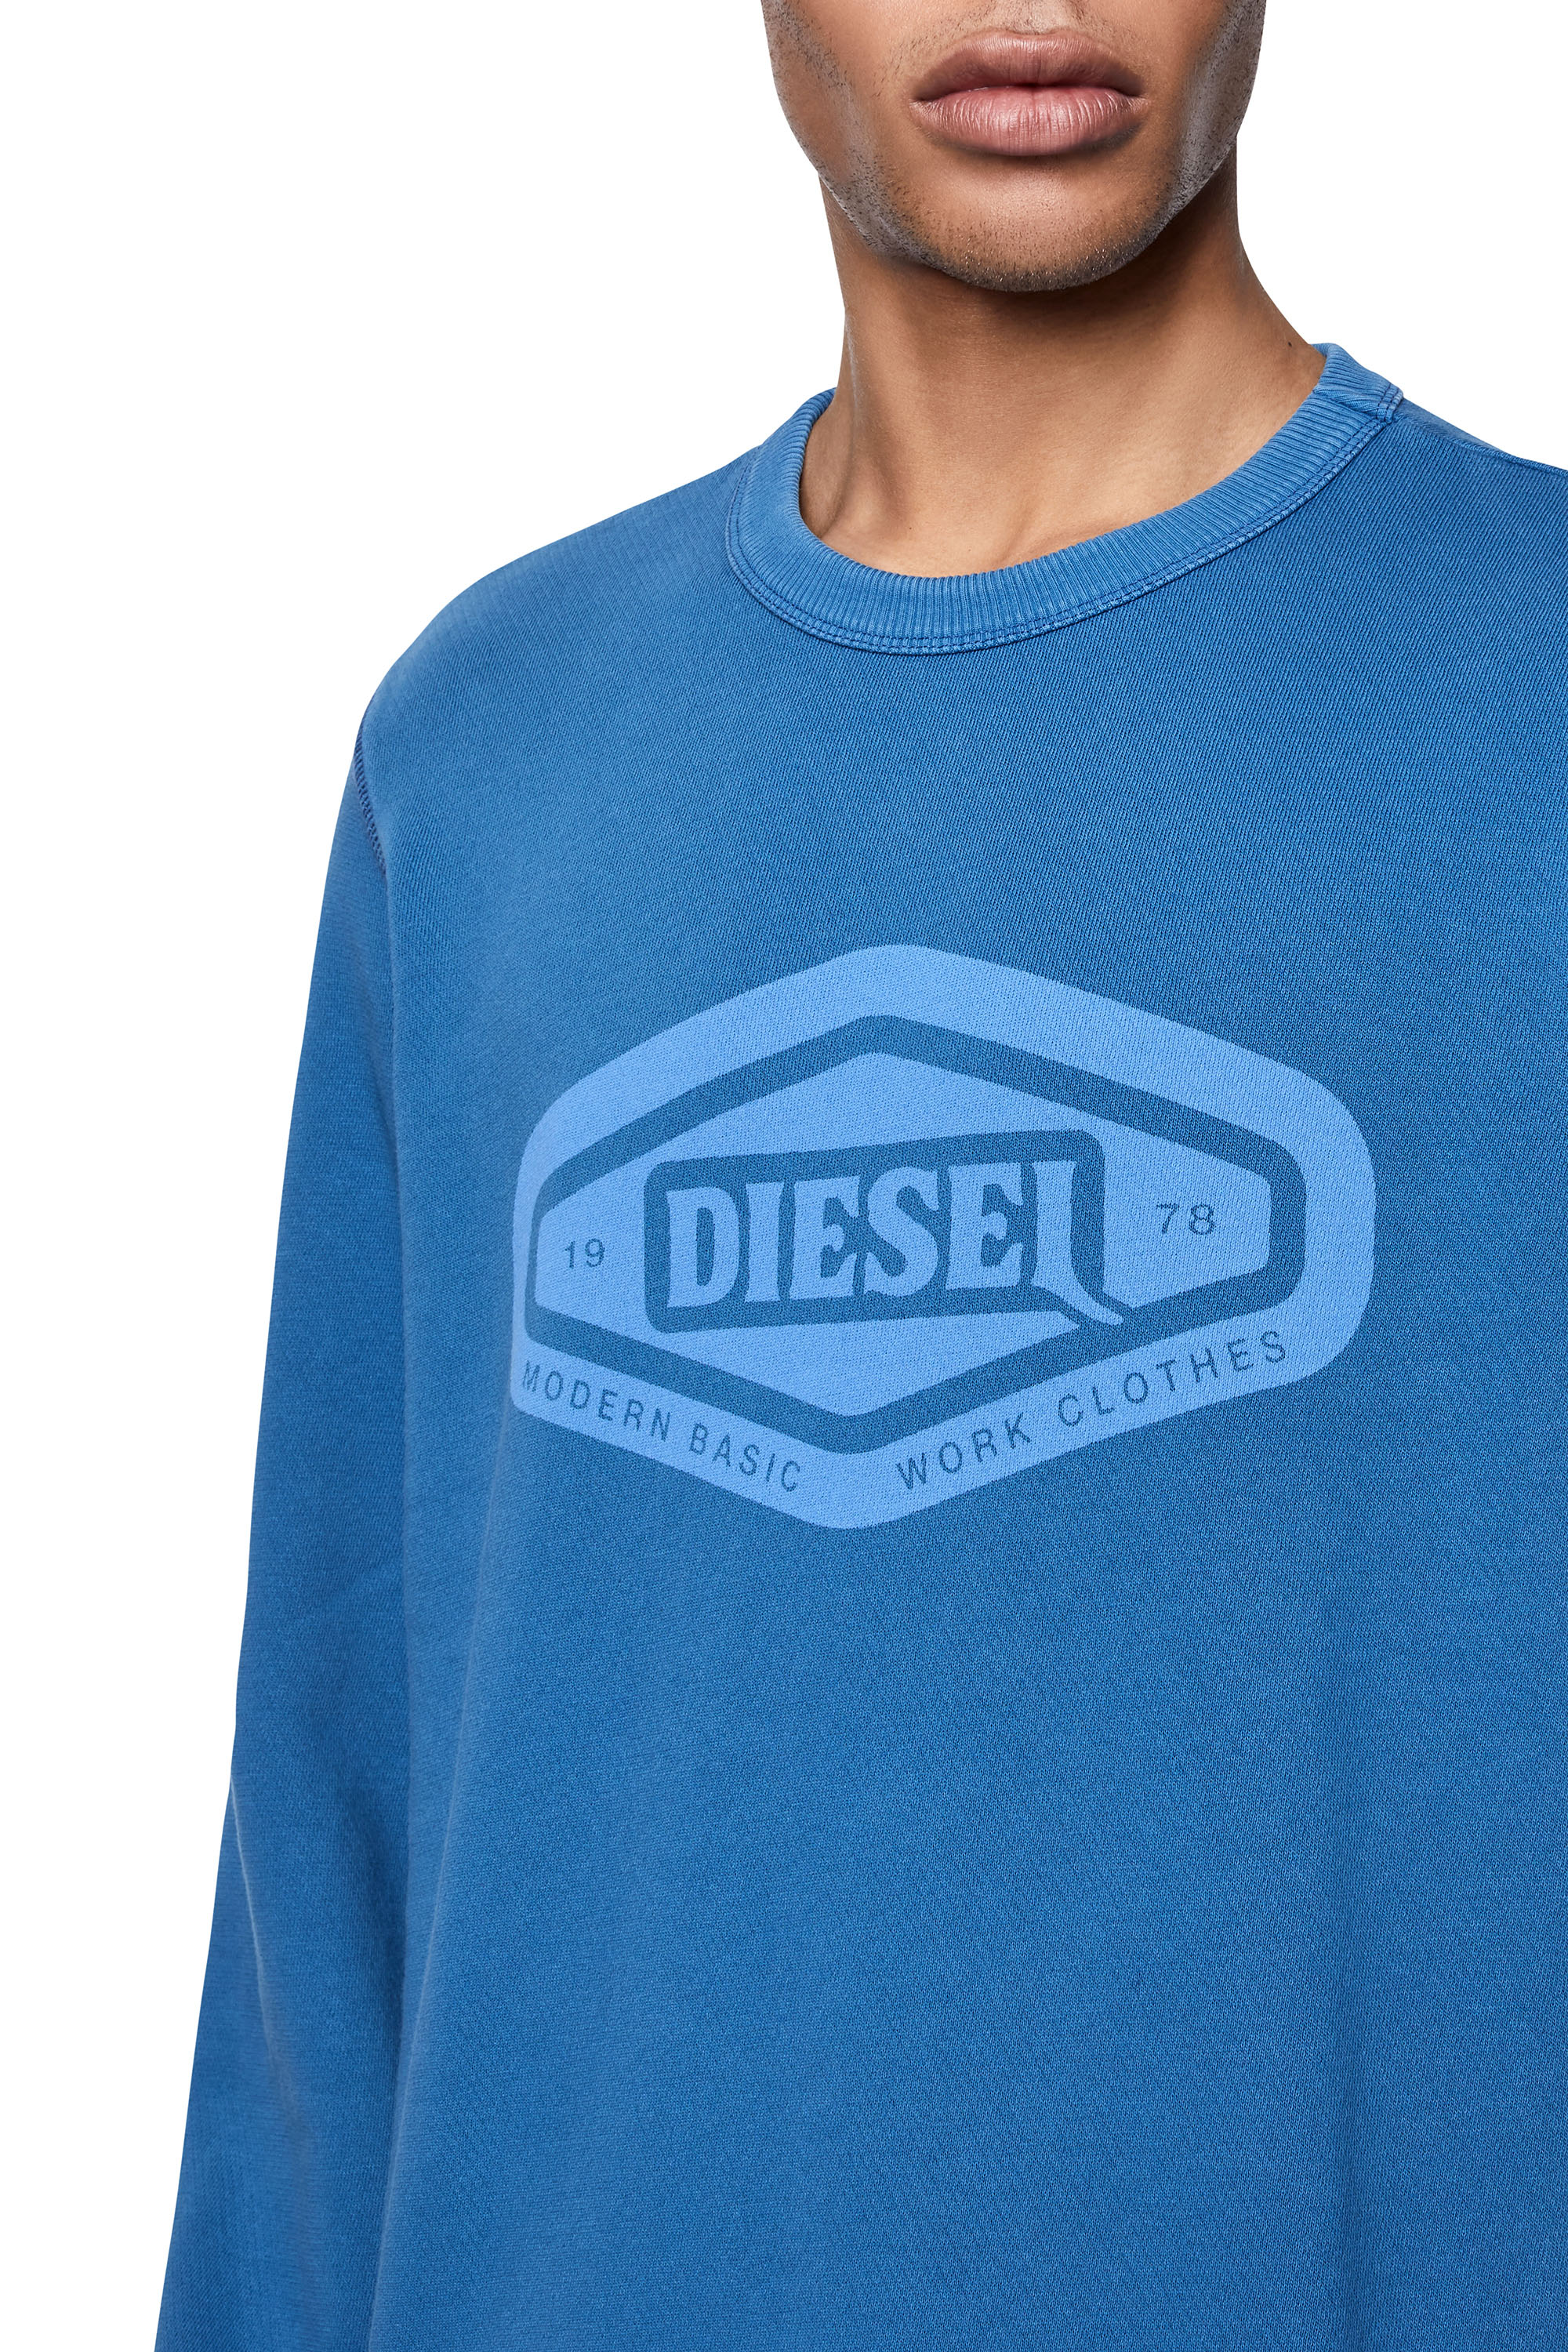 Diesel - S-GINN-D1, ブルー - Image 5